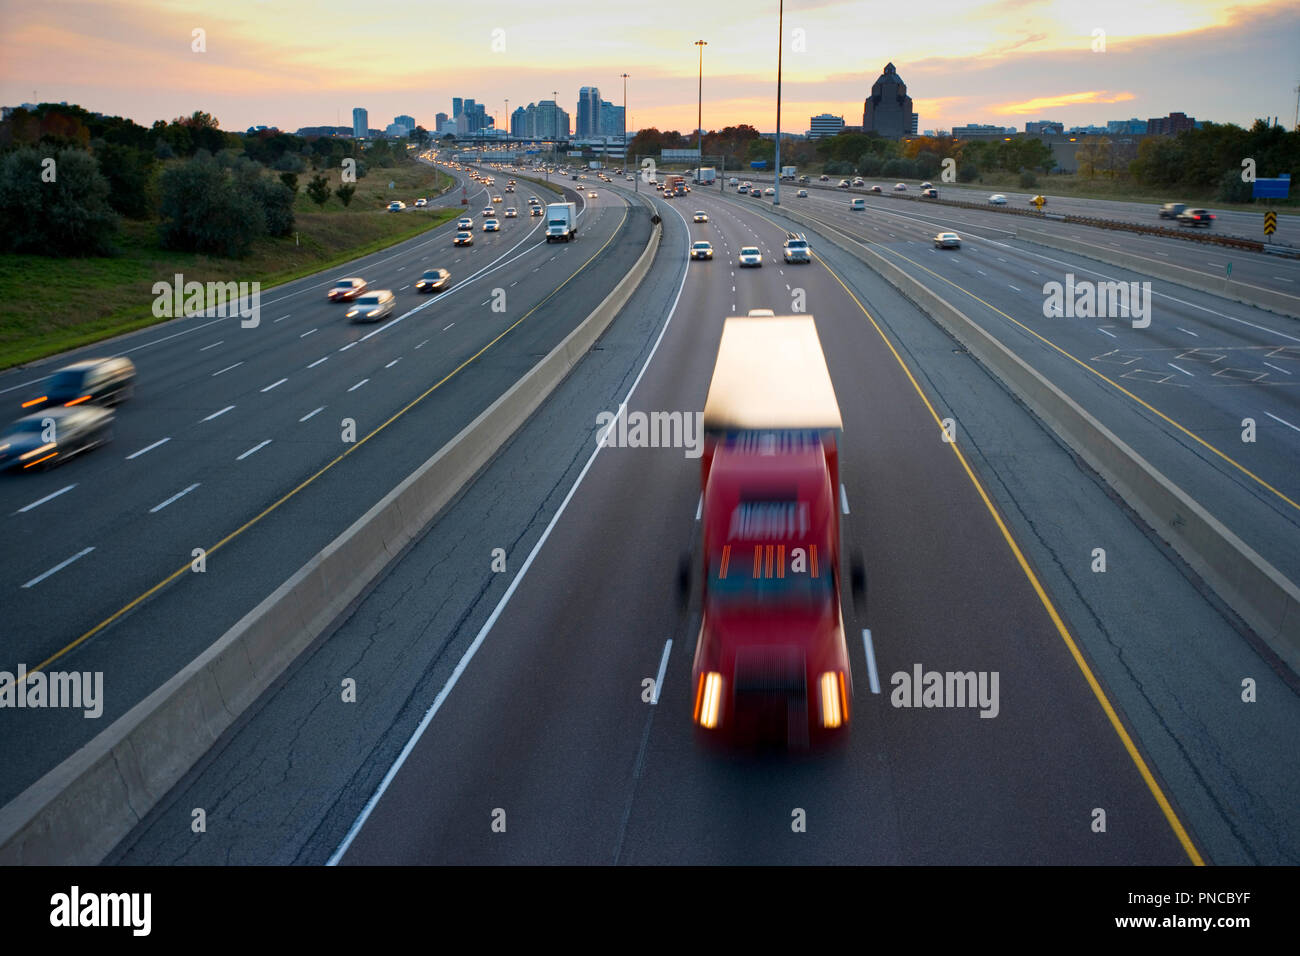 Amérique du Nord, Canada, Ontario, Toronto, la circulation sur l'autoroute au crépuscule Banque D'Images